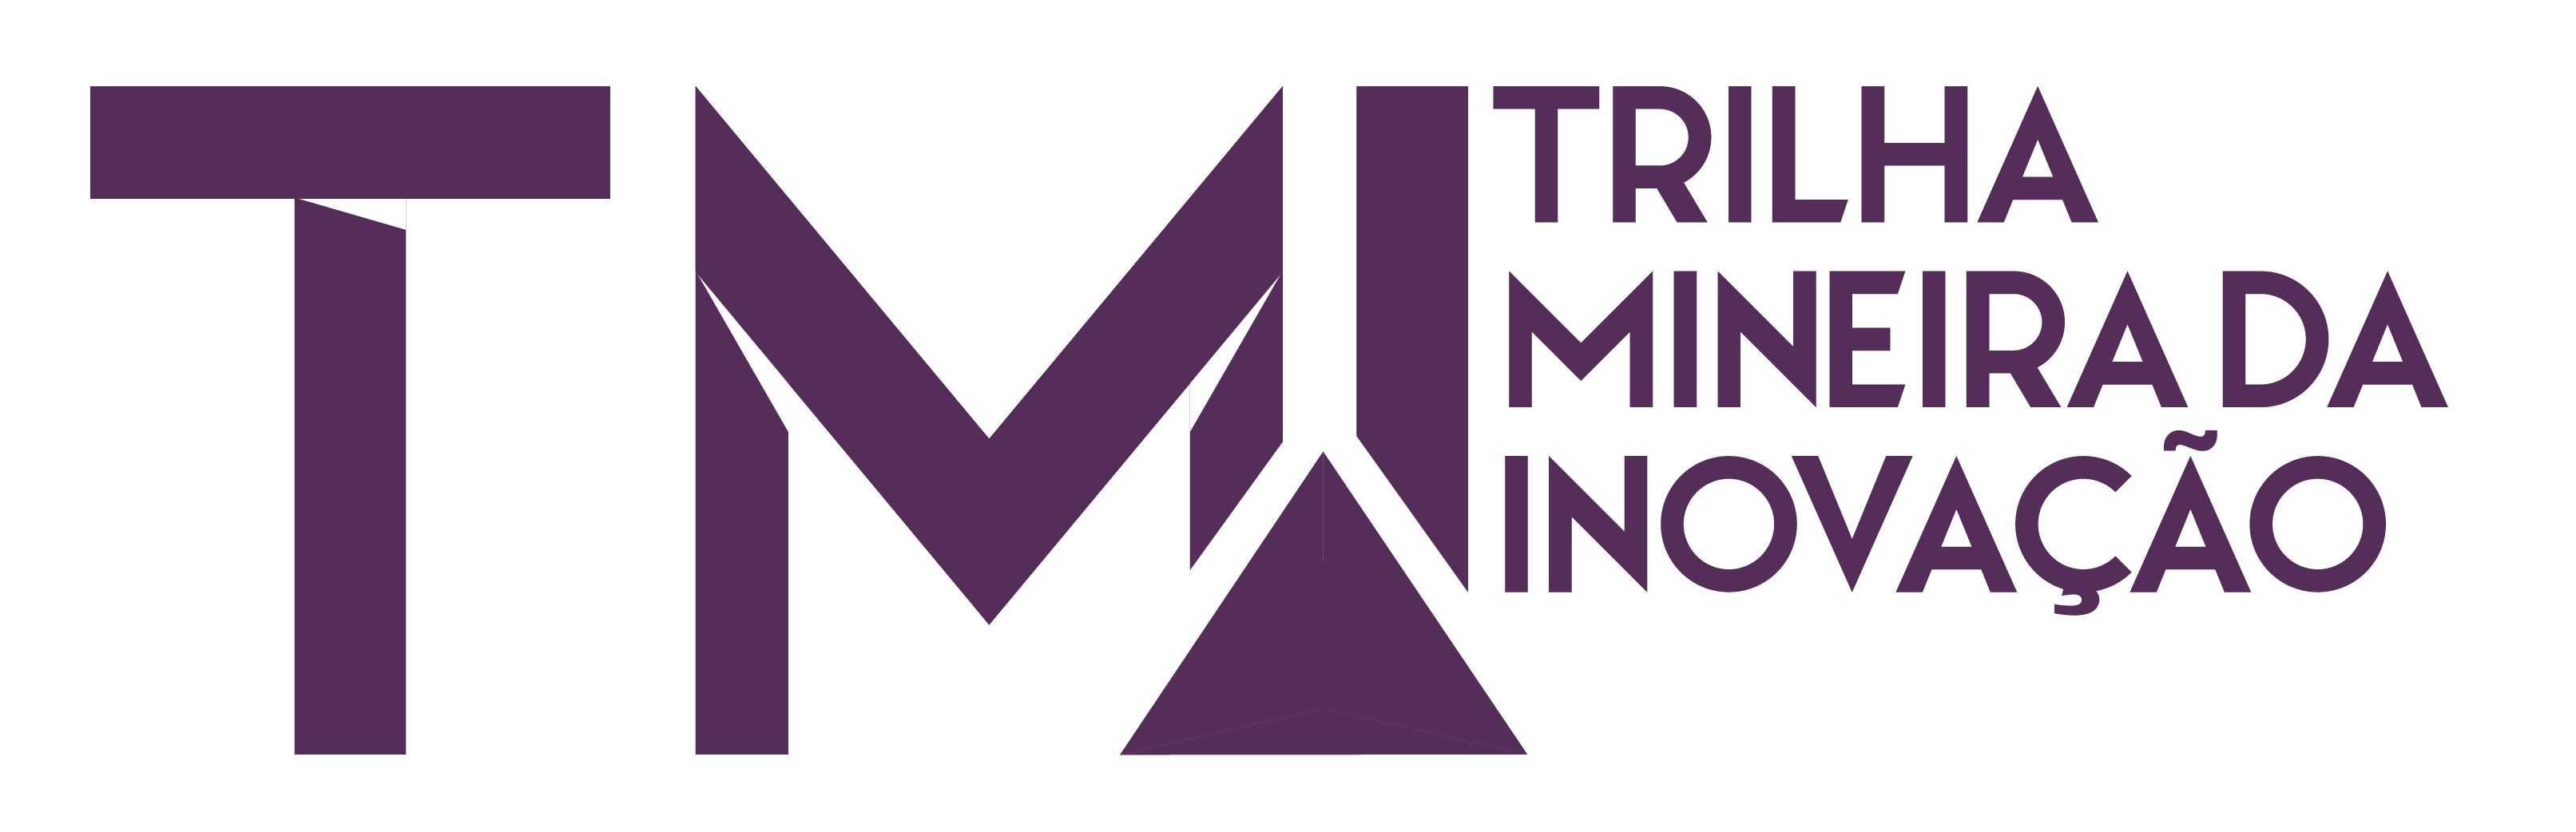 Logo Trilha Mineira